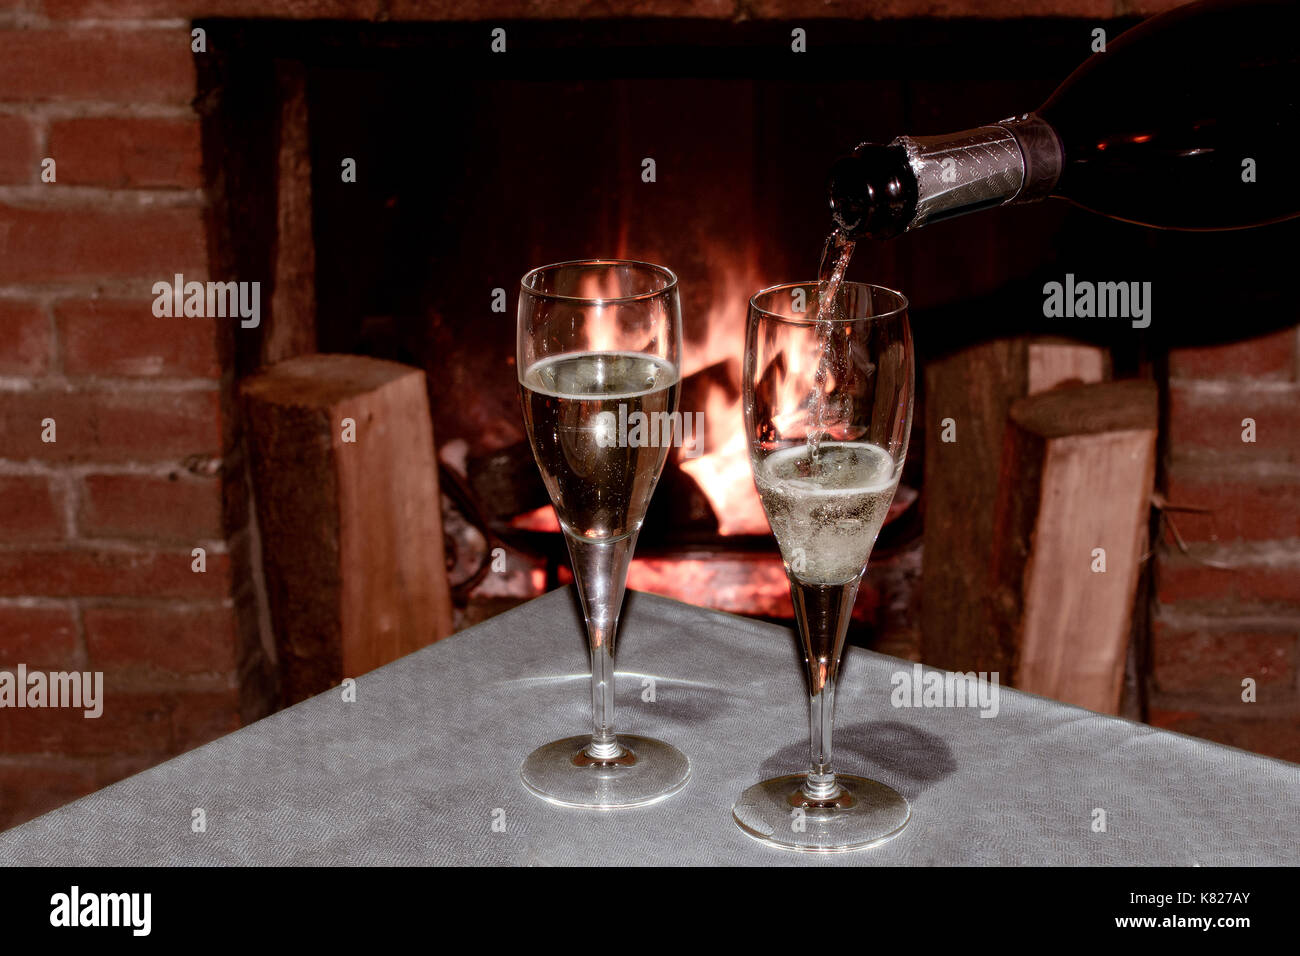 Deux verres de champagne en face de la cheminée à bois pour célébrer une soirée romantique avec sweetheart Banque D'Images